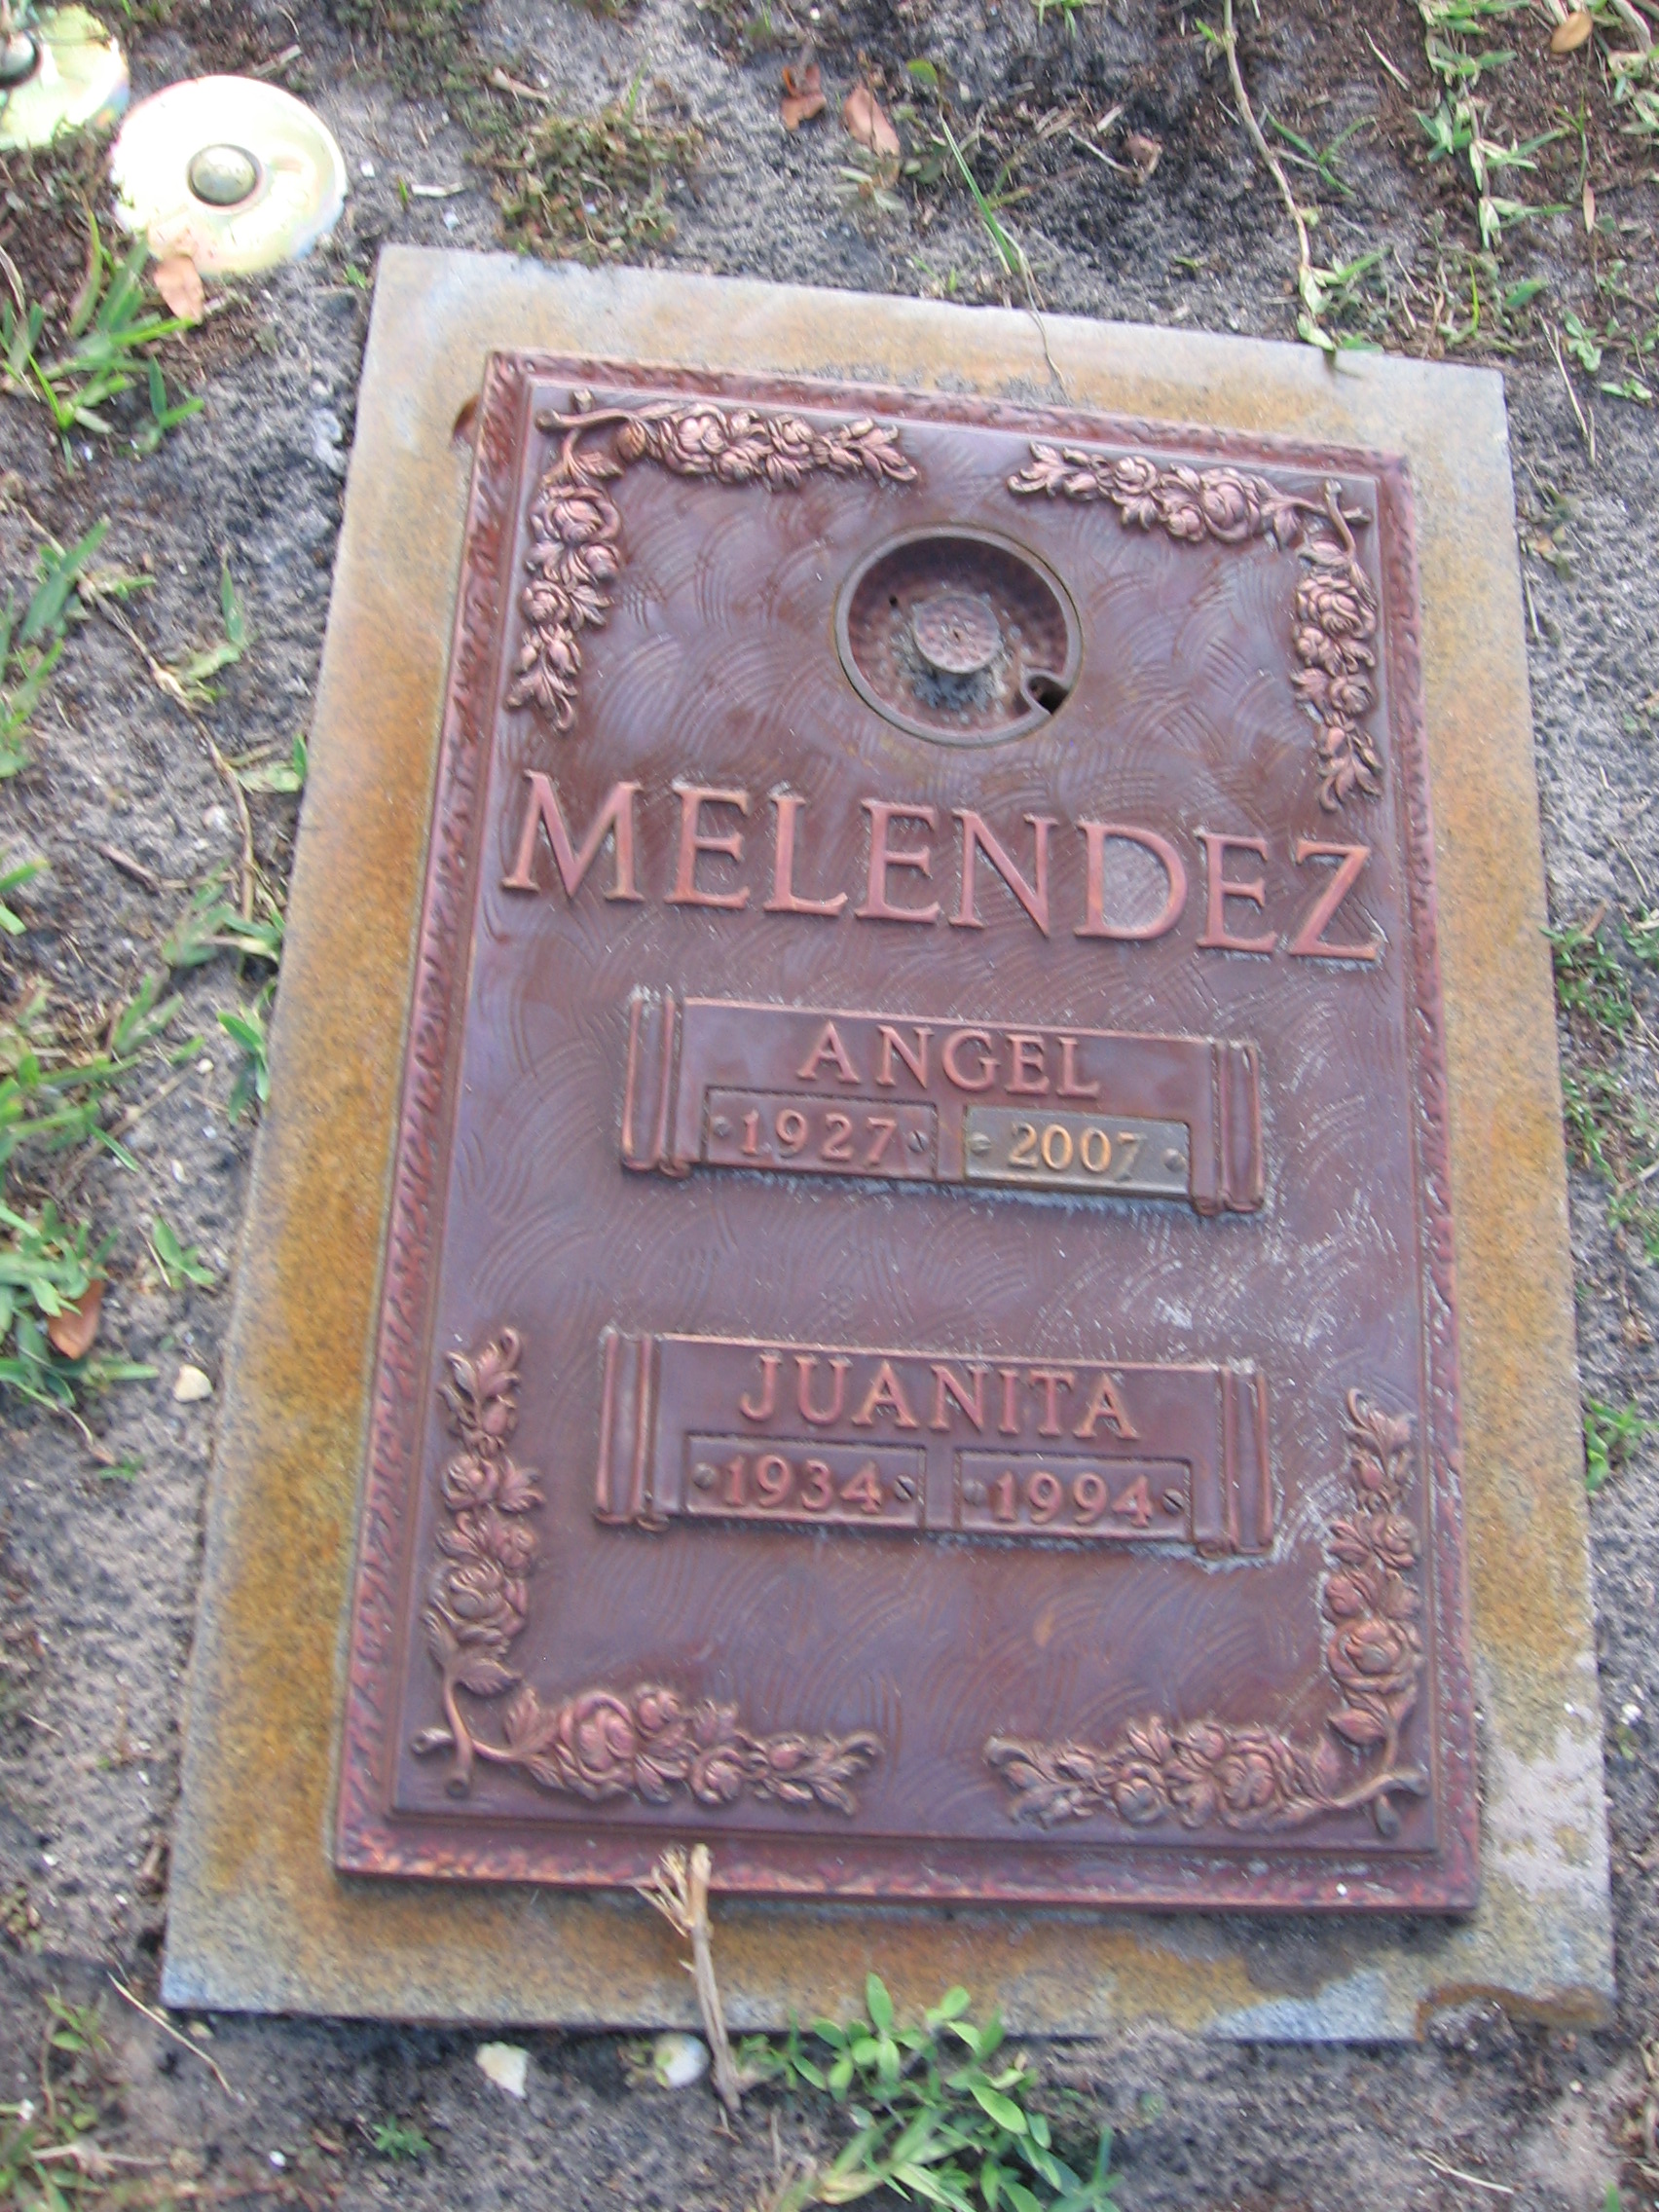 Angel Melendez